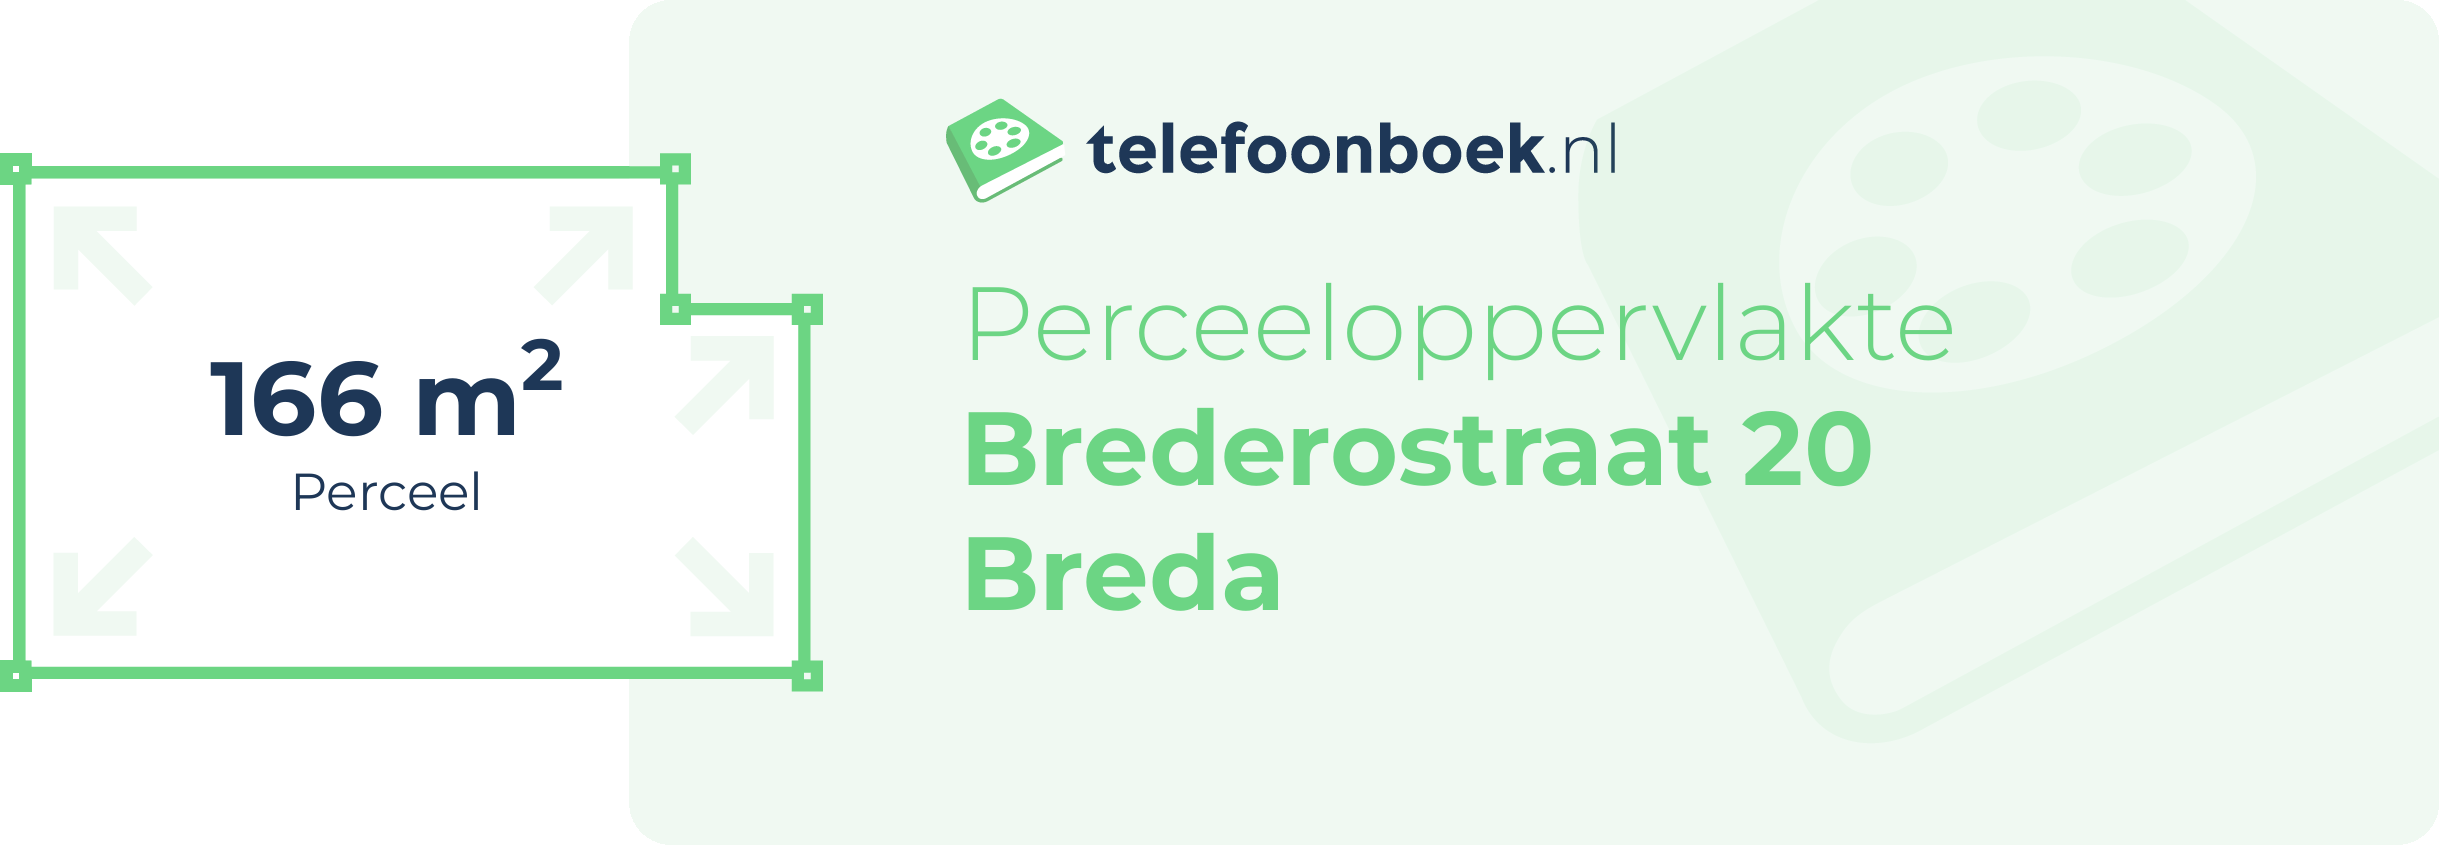 Perceeloppervlakte Brederostraat 20 Breda